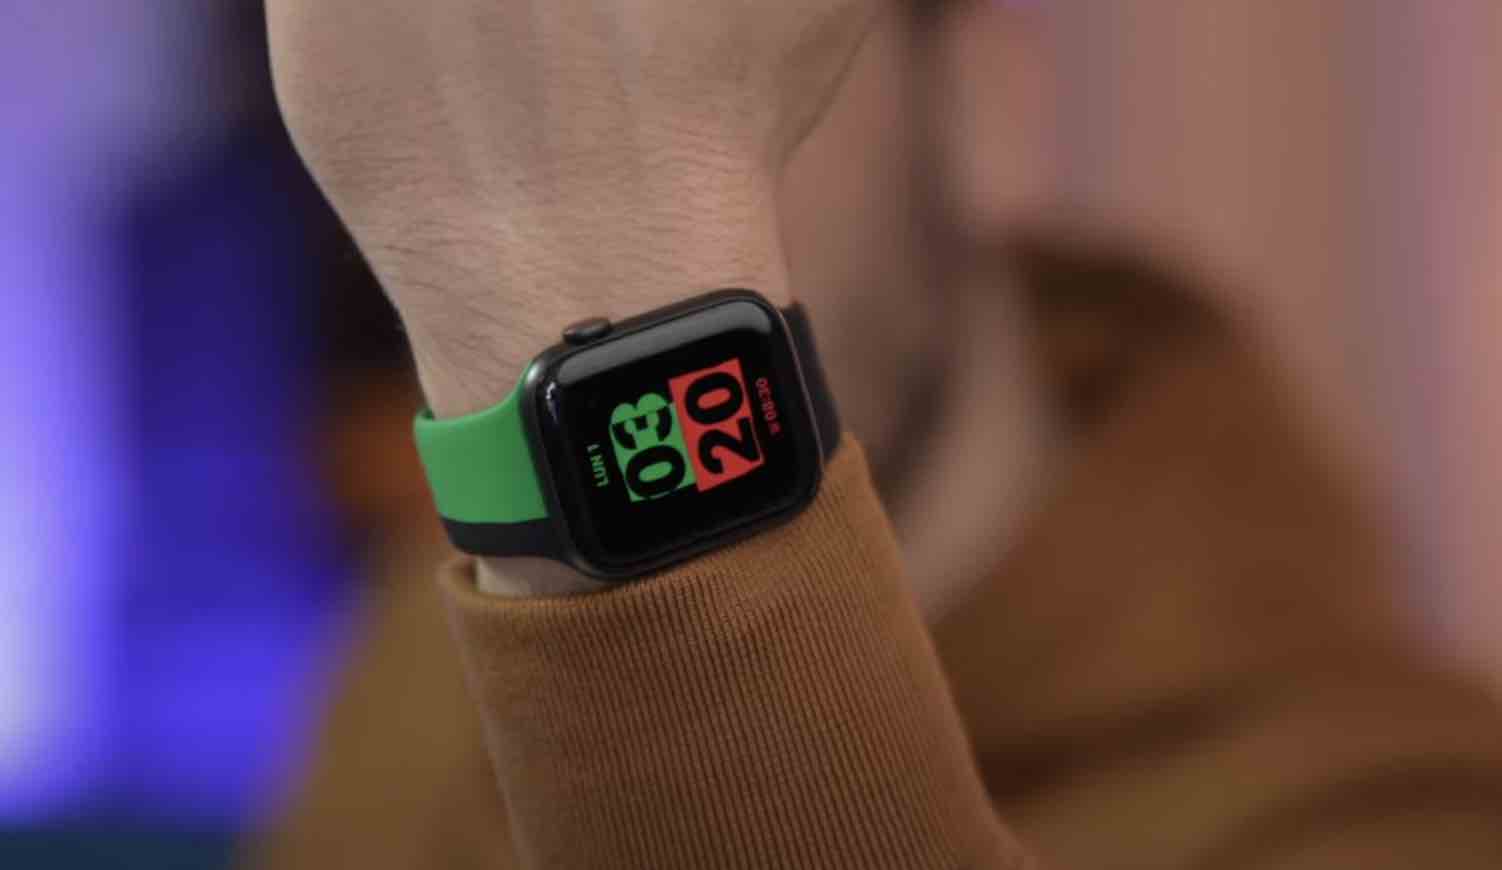 Možno ste zachytili správu, že Apple začalo s predajom limitovanej edície Apple Watch Series 6 Black Unity. Tento unikátny model sa už dostal ku prvým majiteľom a vy si teraz môžete pozrieť unboxing videá či prvé dojmy.